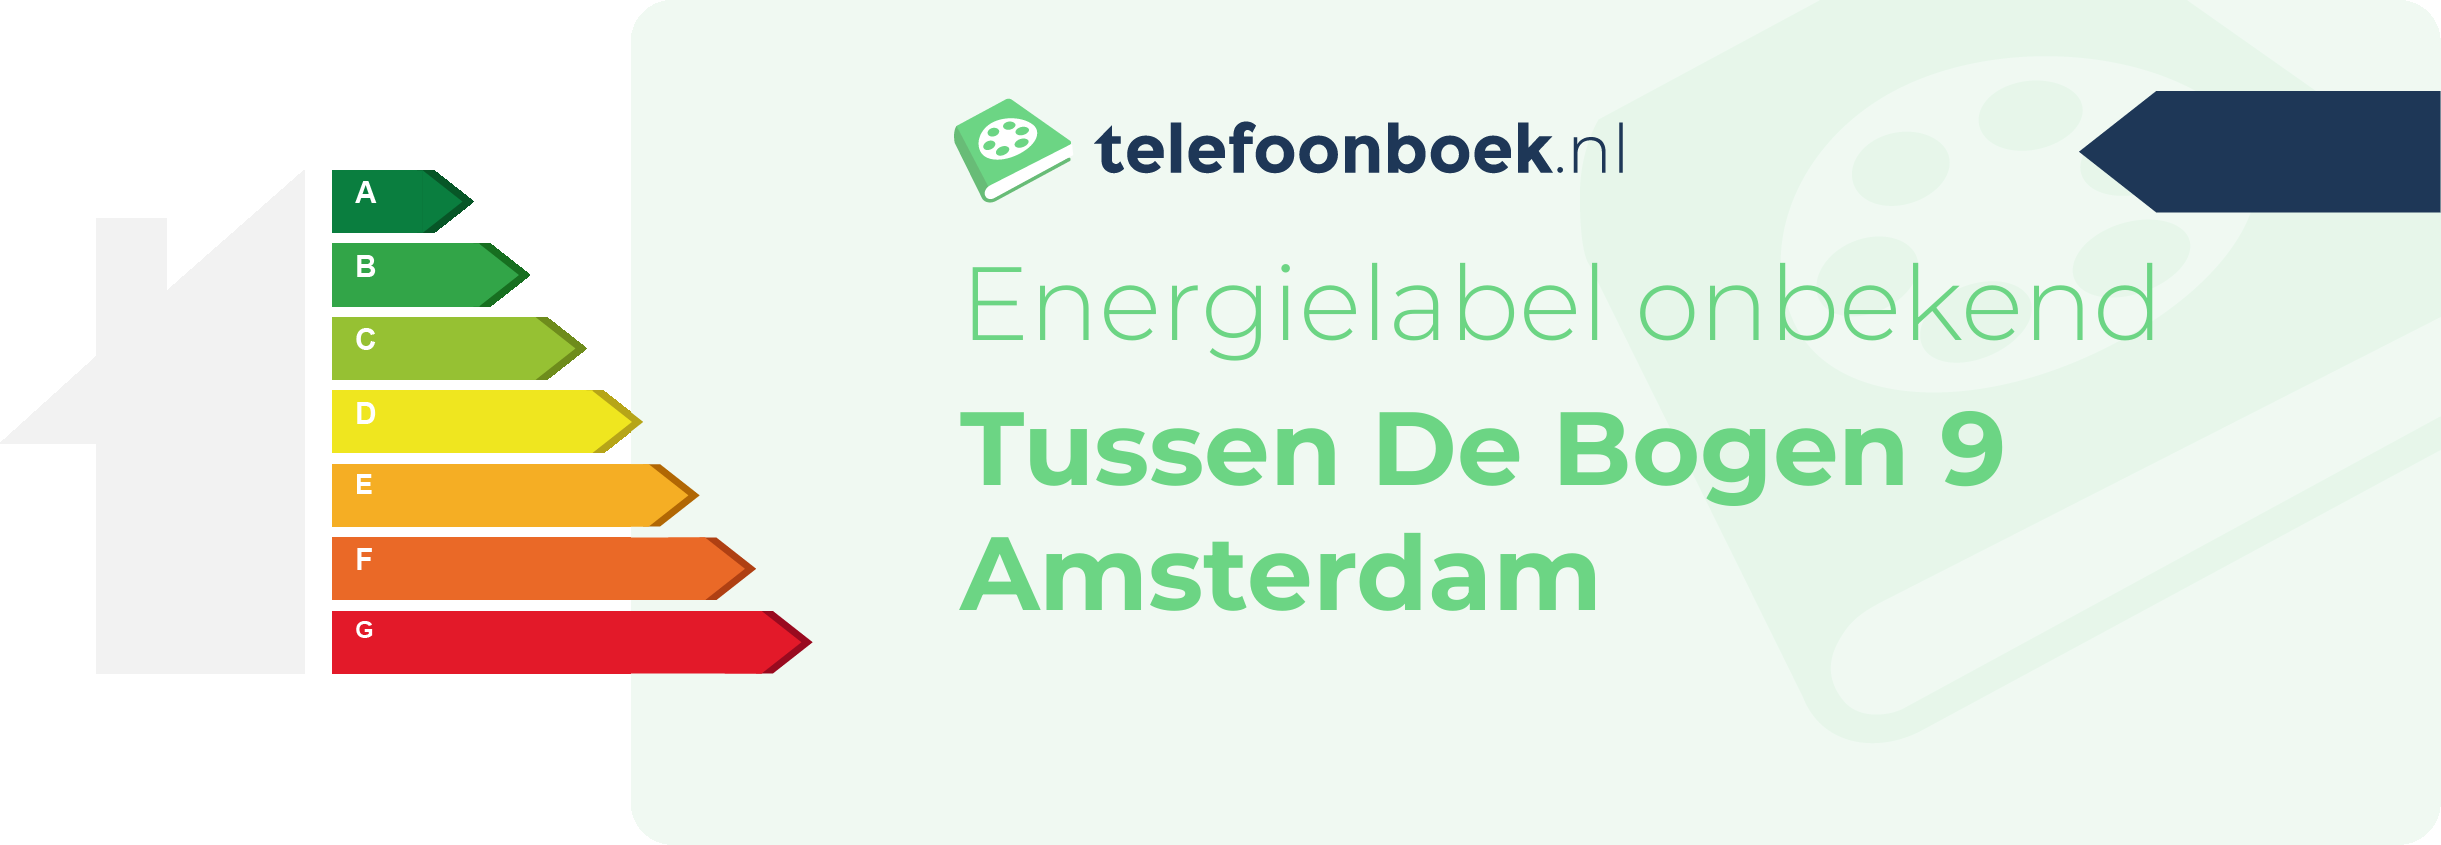 Energielabel Tussen De Bogen 9 Amsterdam